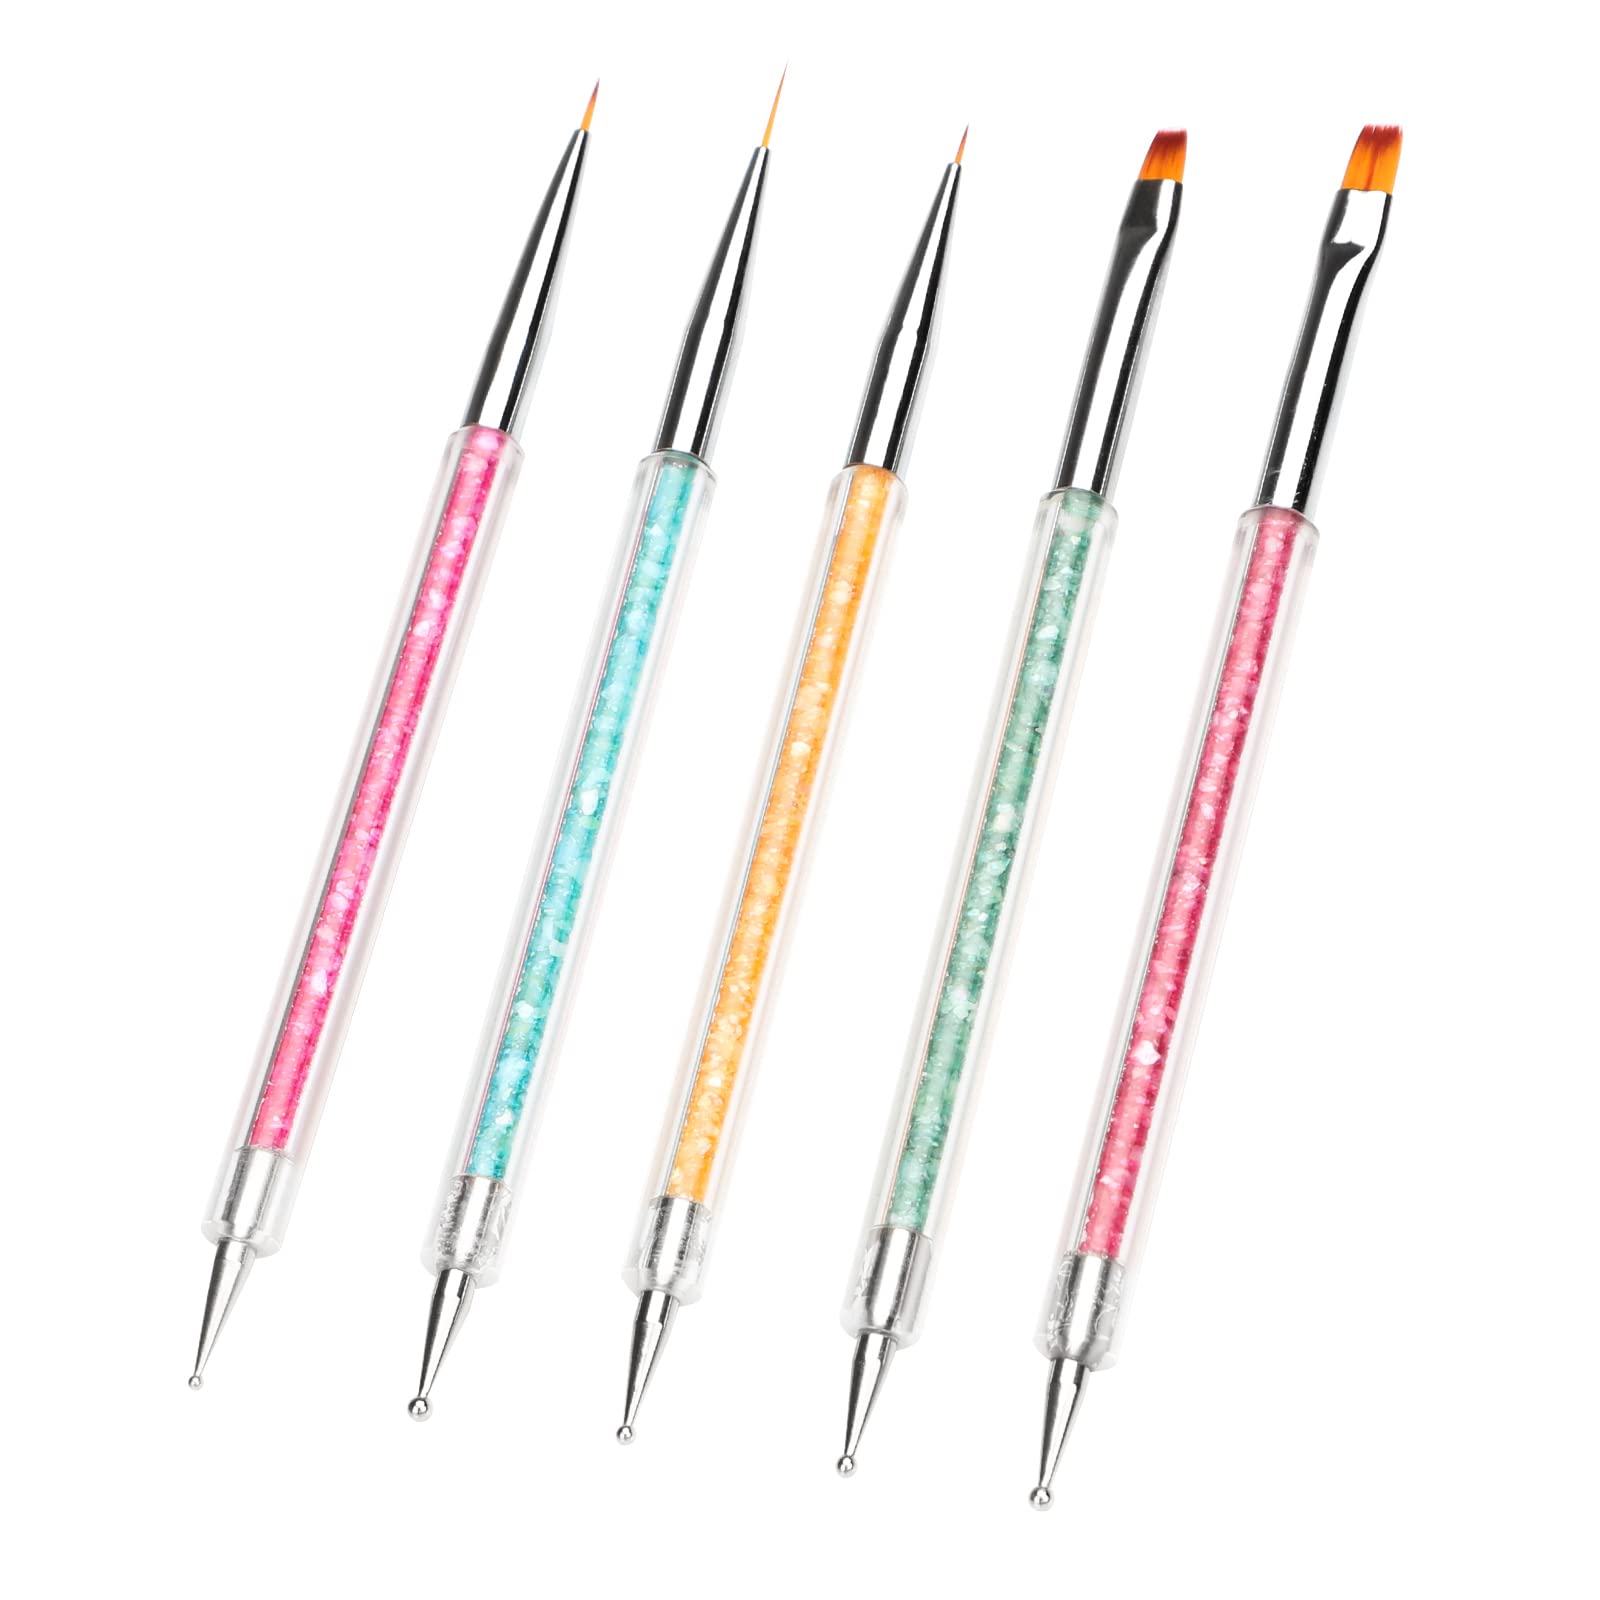 5pcs Nail Art Brushes, Nail Dotting Tools, Double Ended Nail Art Pens Kit, Nail Polish Paint Manicure Beauty Dot Pen Tools for Women Girls